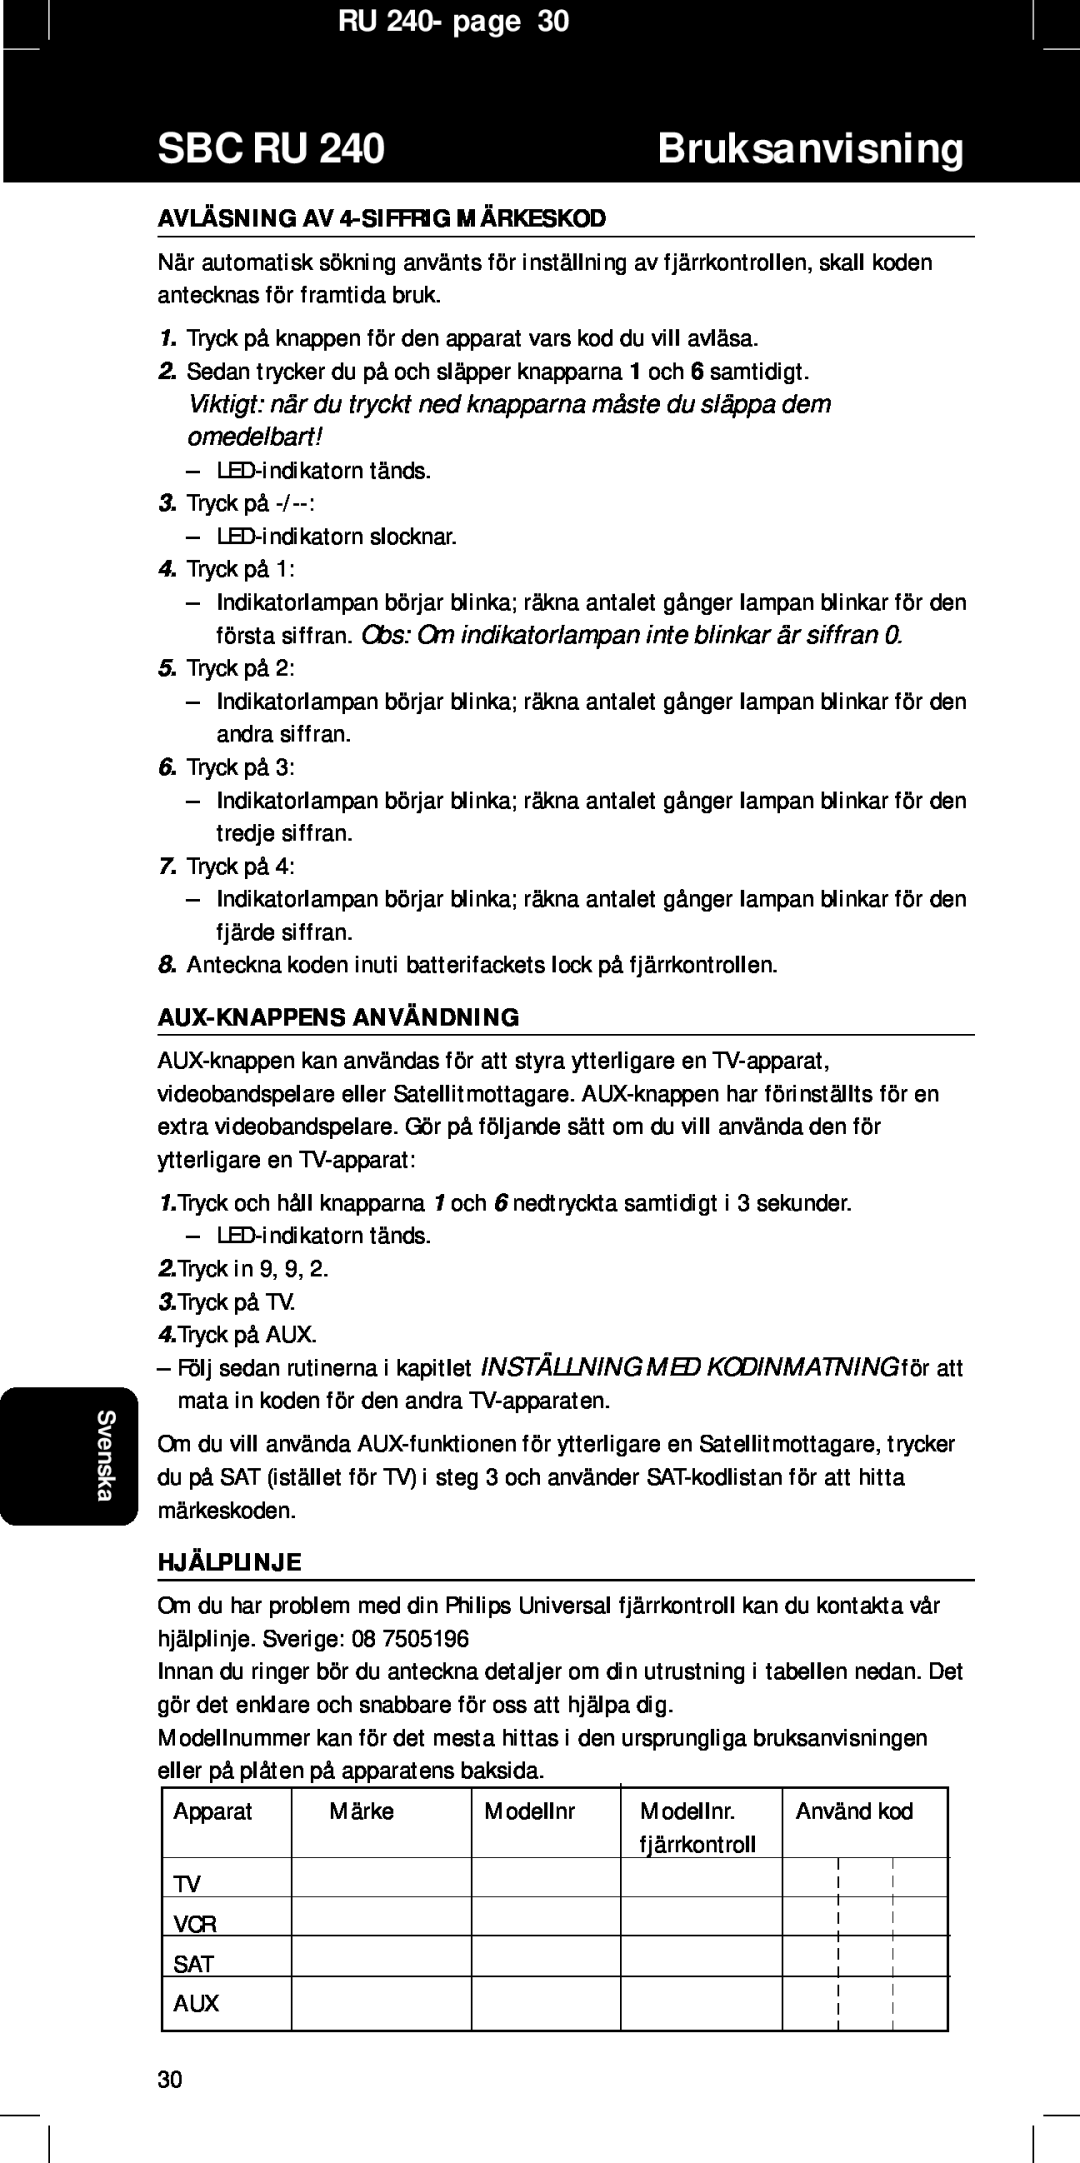 Philips SBC RU240/00U manual Sbc Ru, Bruksanvisning, RU 240- page, AVLÄSNING AV 4-SIFFRIGMÄRKESKOD, Aux-Knappensanvändning 